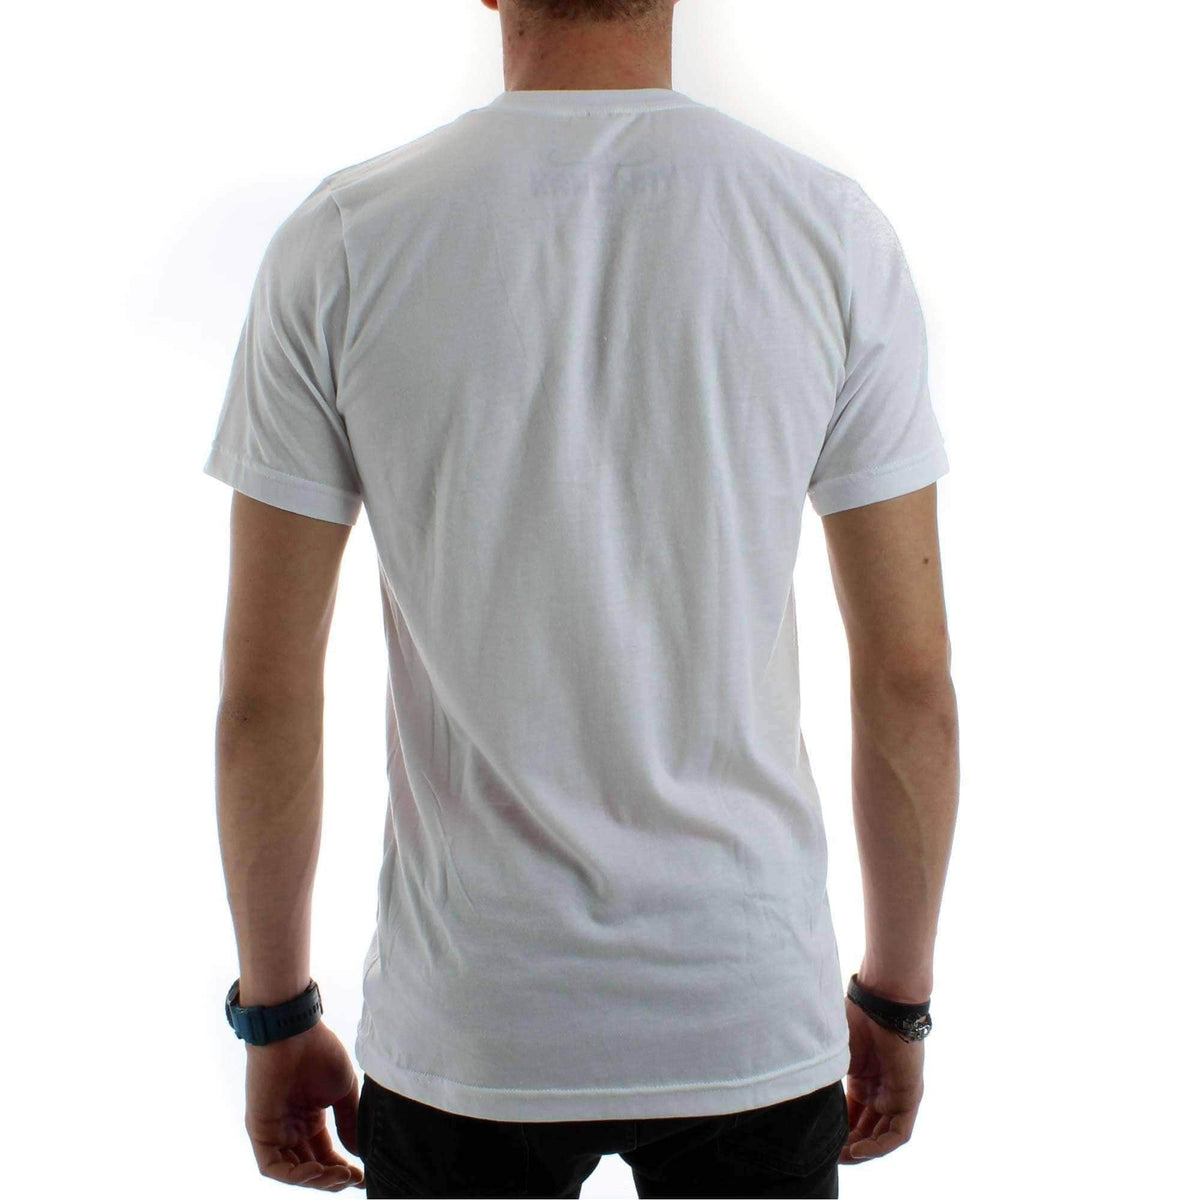 Yakwax Horizon of Stoke T-Shirt in White - Mens Graphic T-Shirt by Yakwax